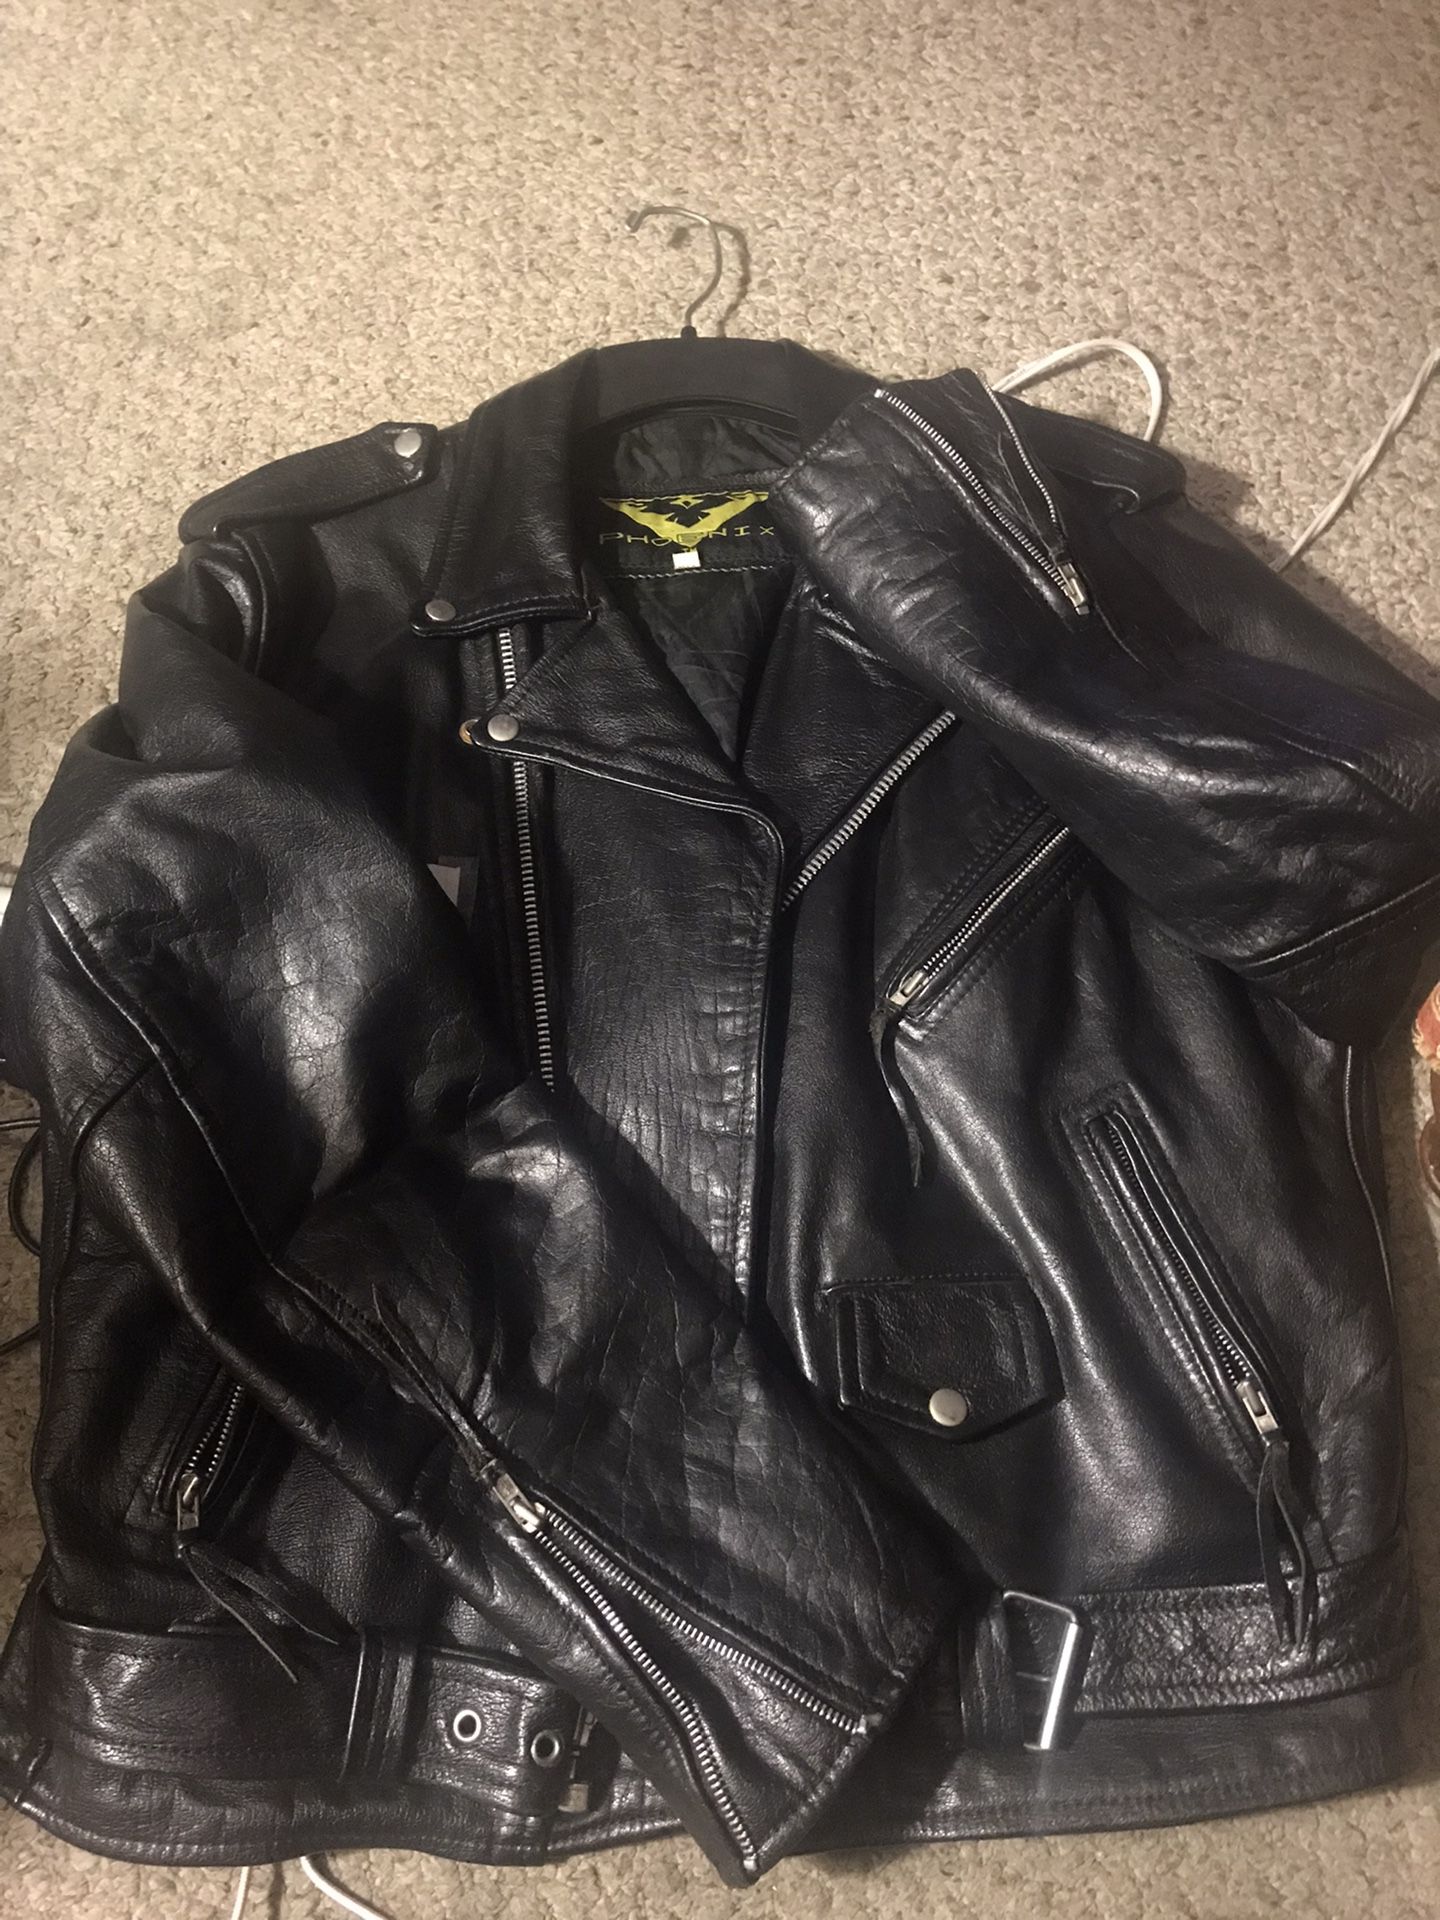 Vintage Men’s Black Leather Jacket 